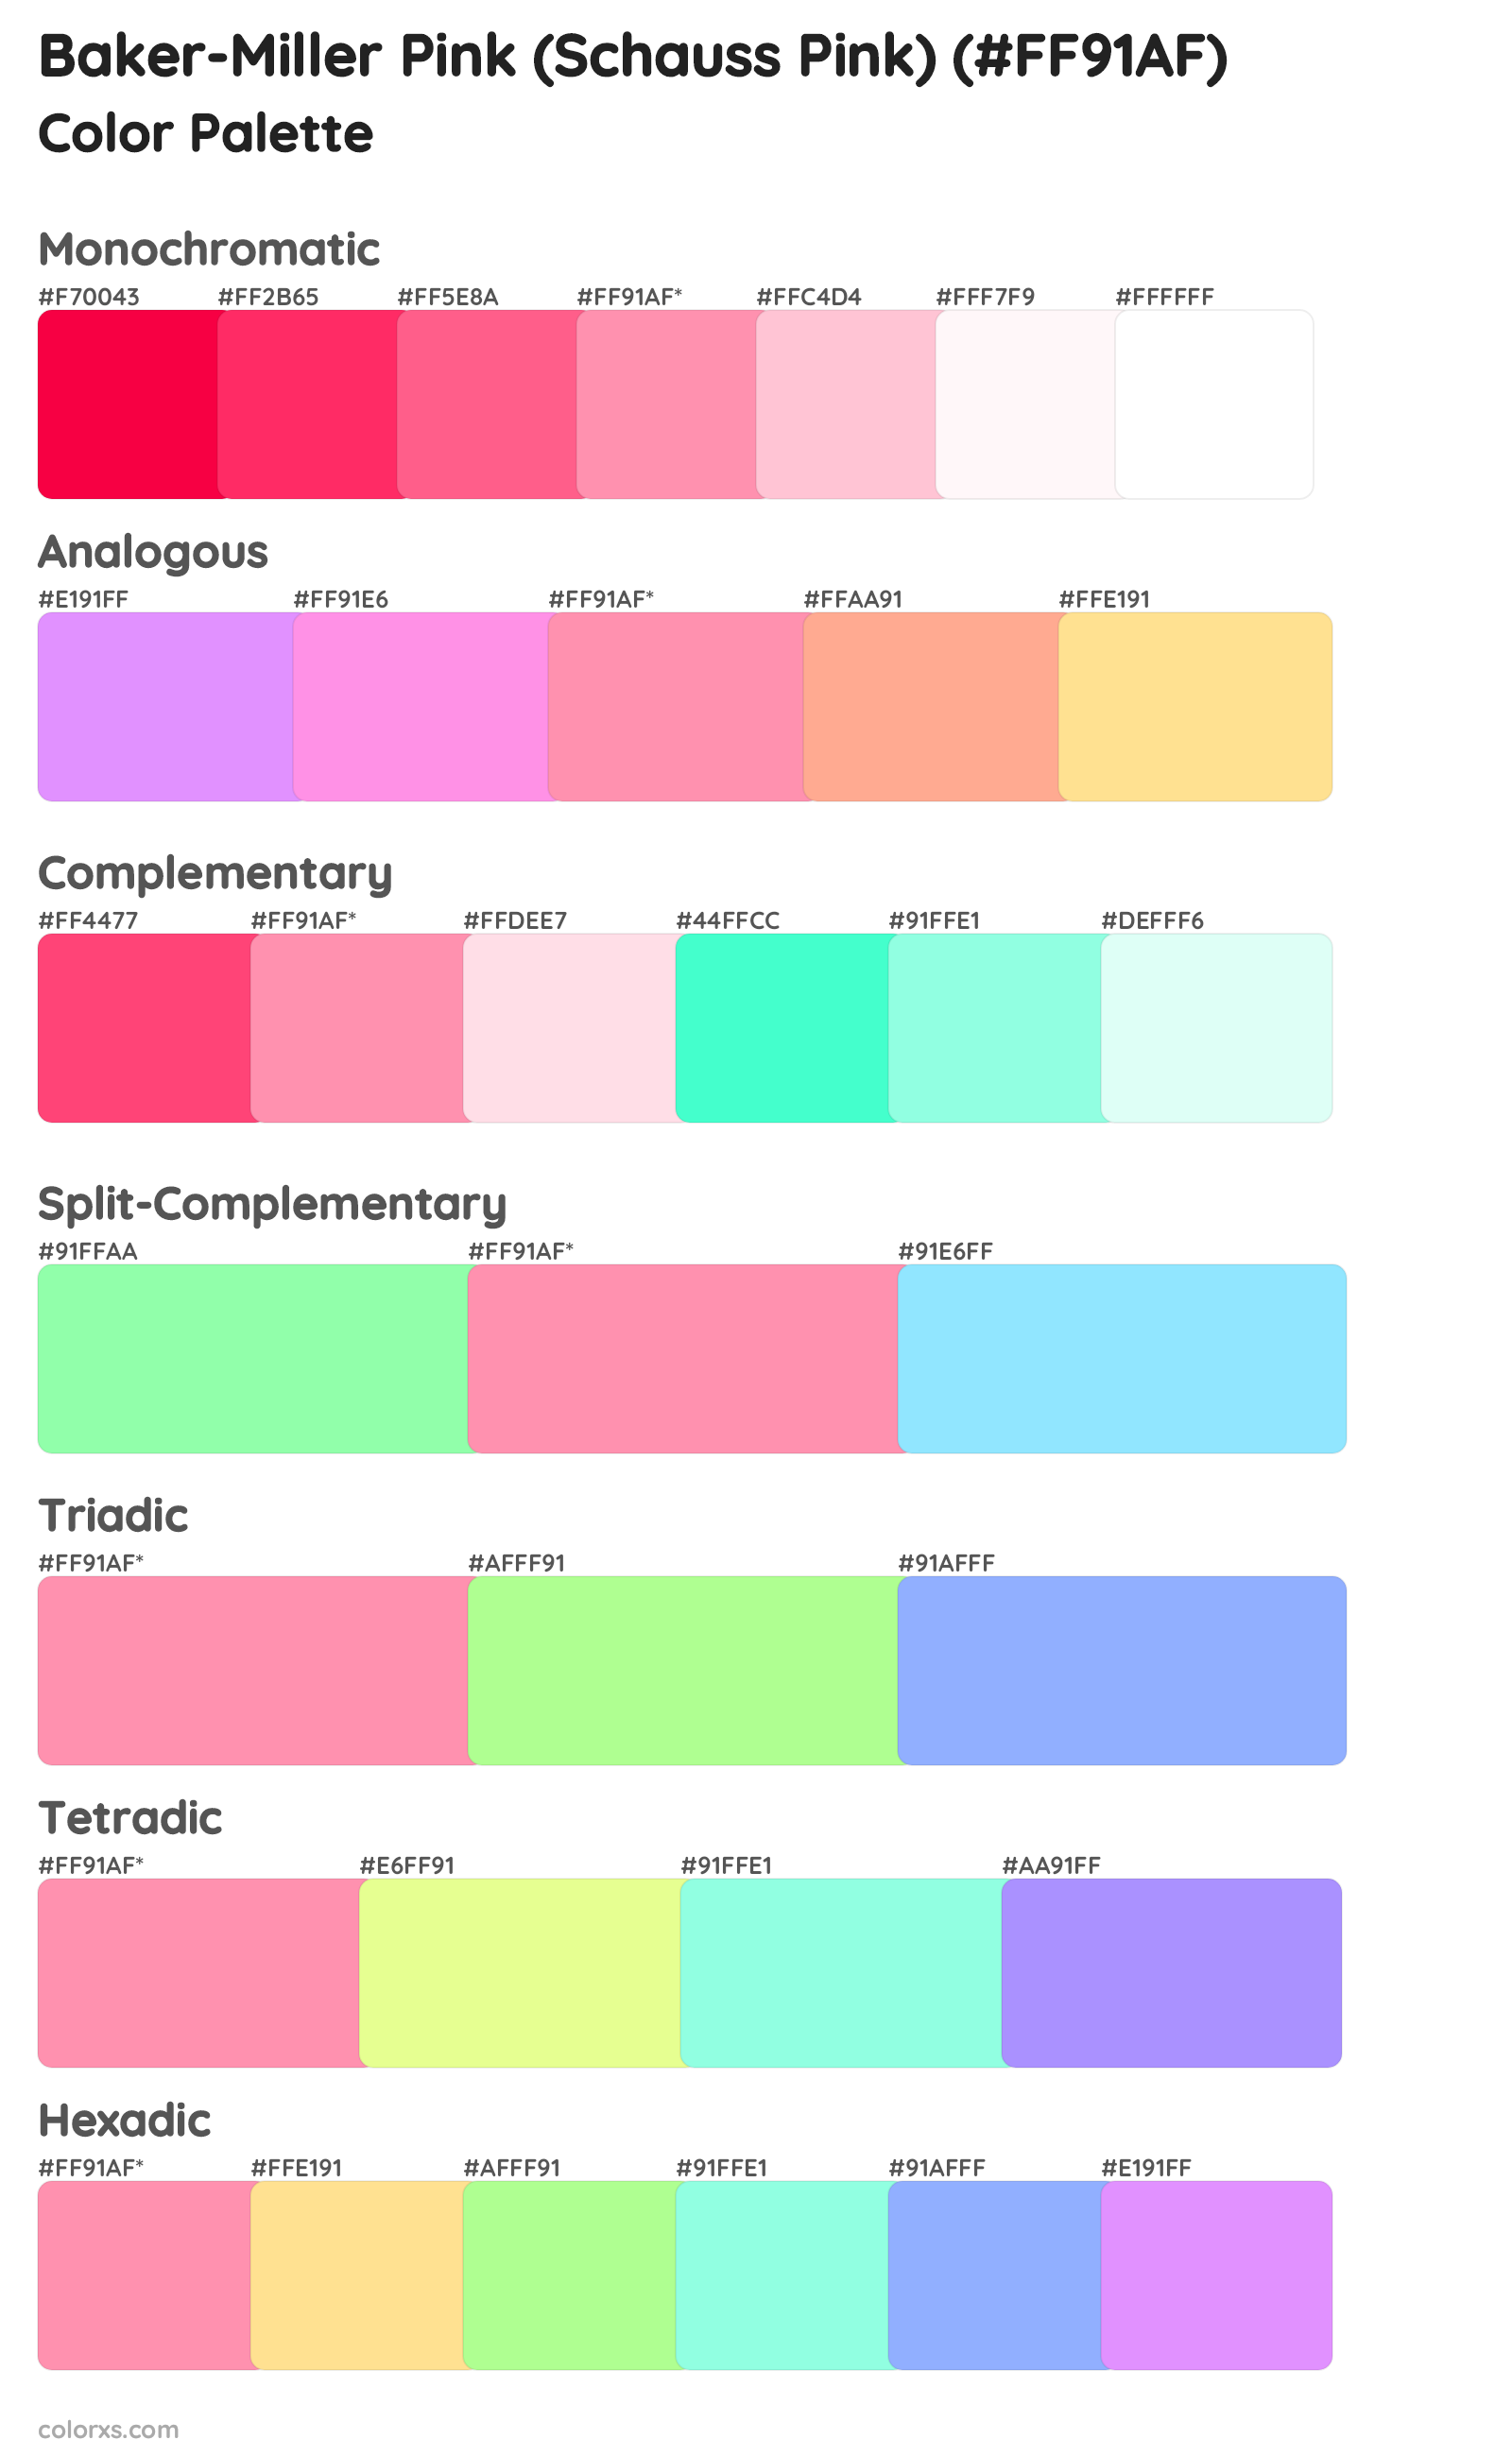 Baker-Miller Pink (Schauss Pink) Color Scheme Palettes